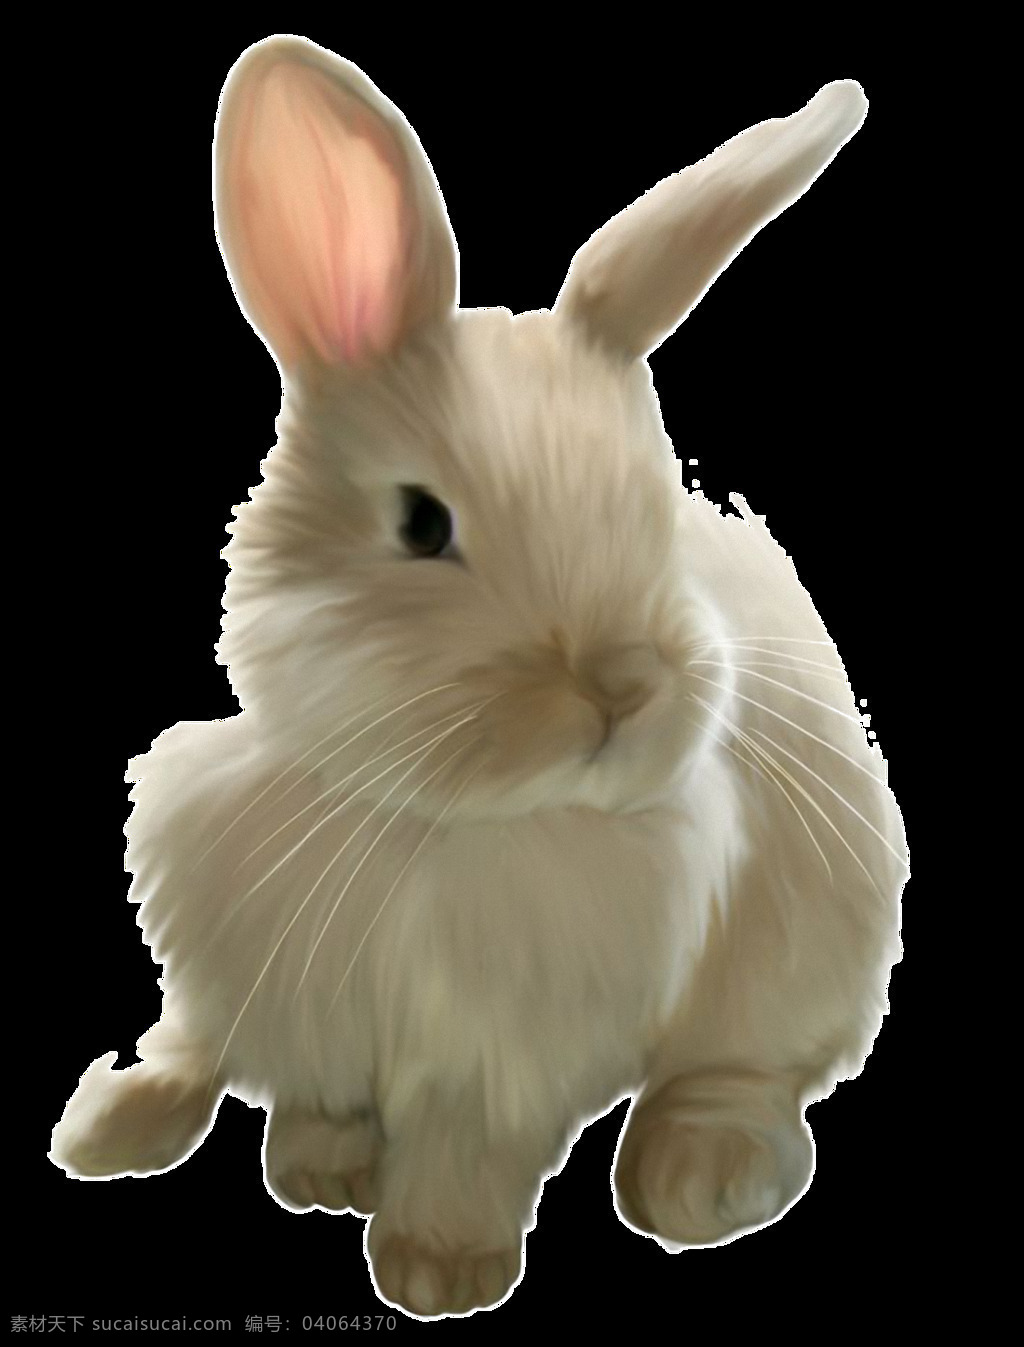 可爱 白 毛 兔子 免 抠 透明 可爱白毛兔子 可爱小白兔 超 萌 小 可爱小兔子 萌兔子 可爱兔子 兔子素材